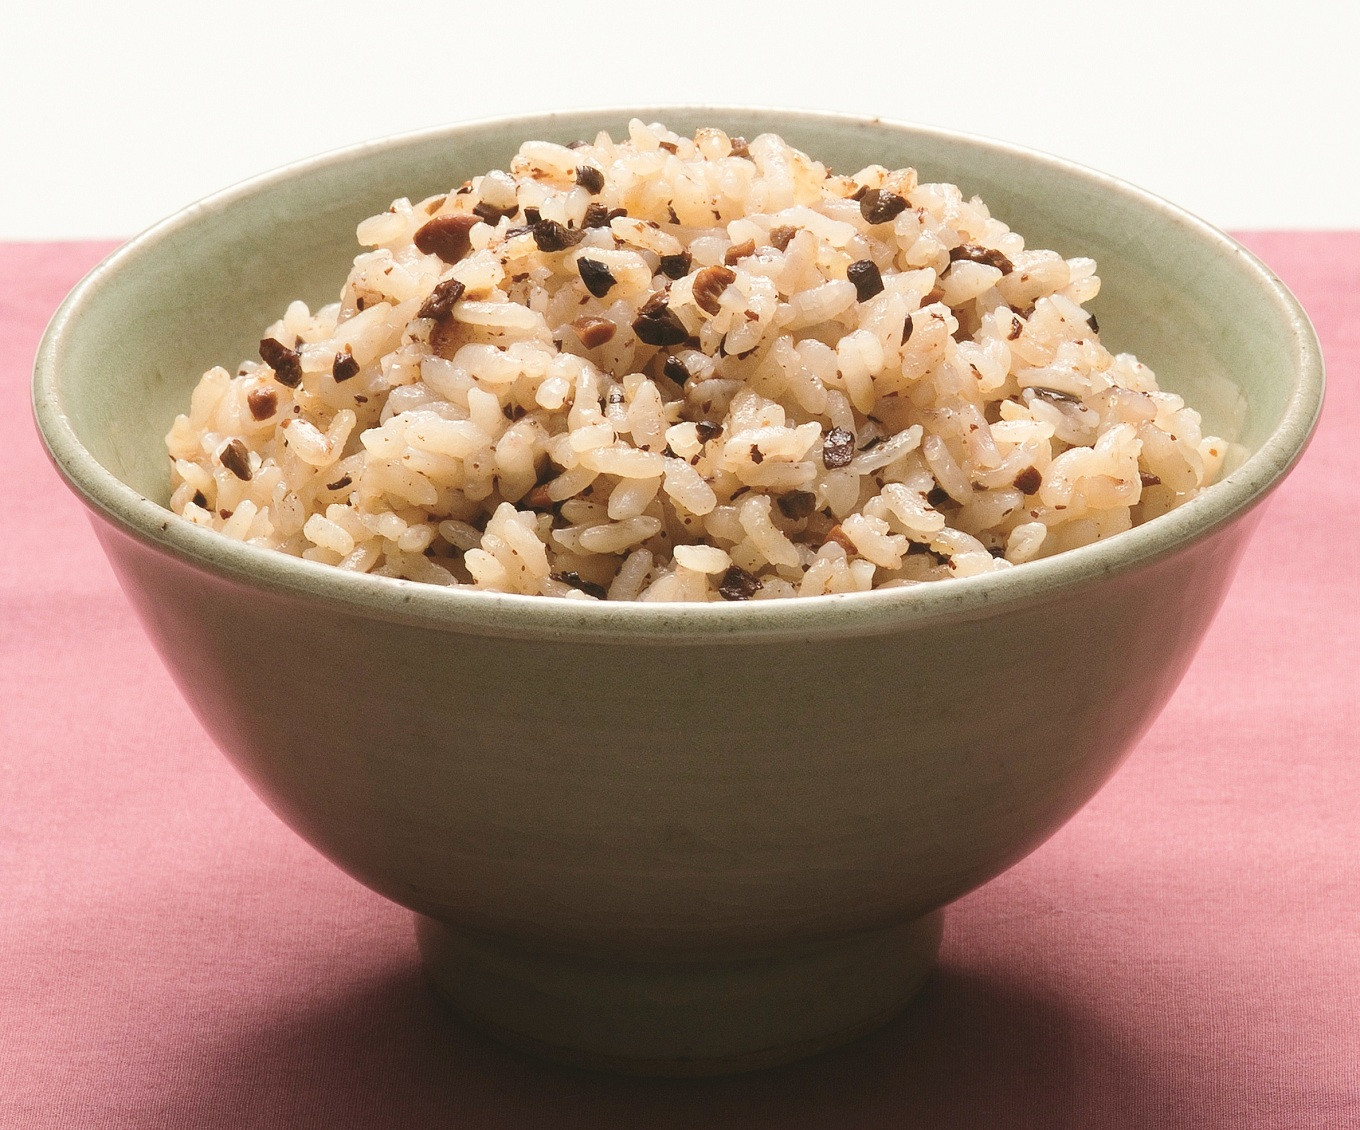 「黒豆ごはんの素」は、お米と一緒に炊くだけの簡単調理。